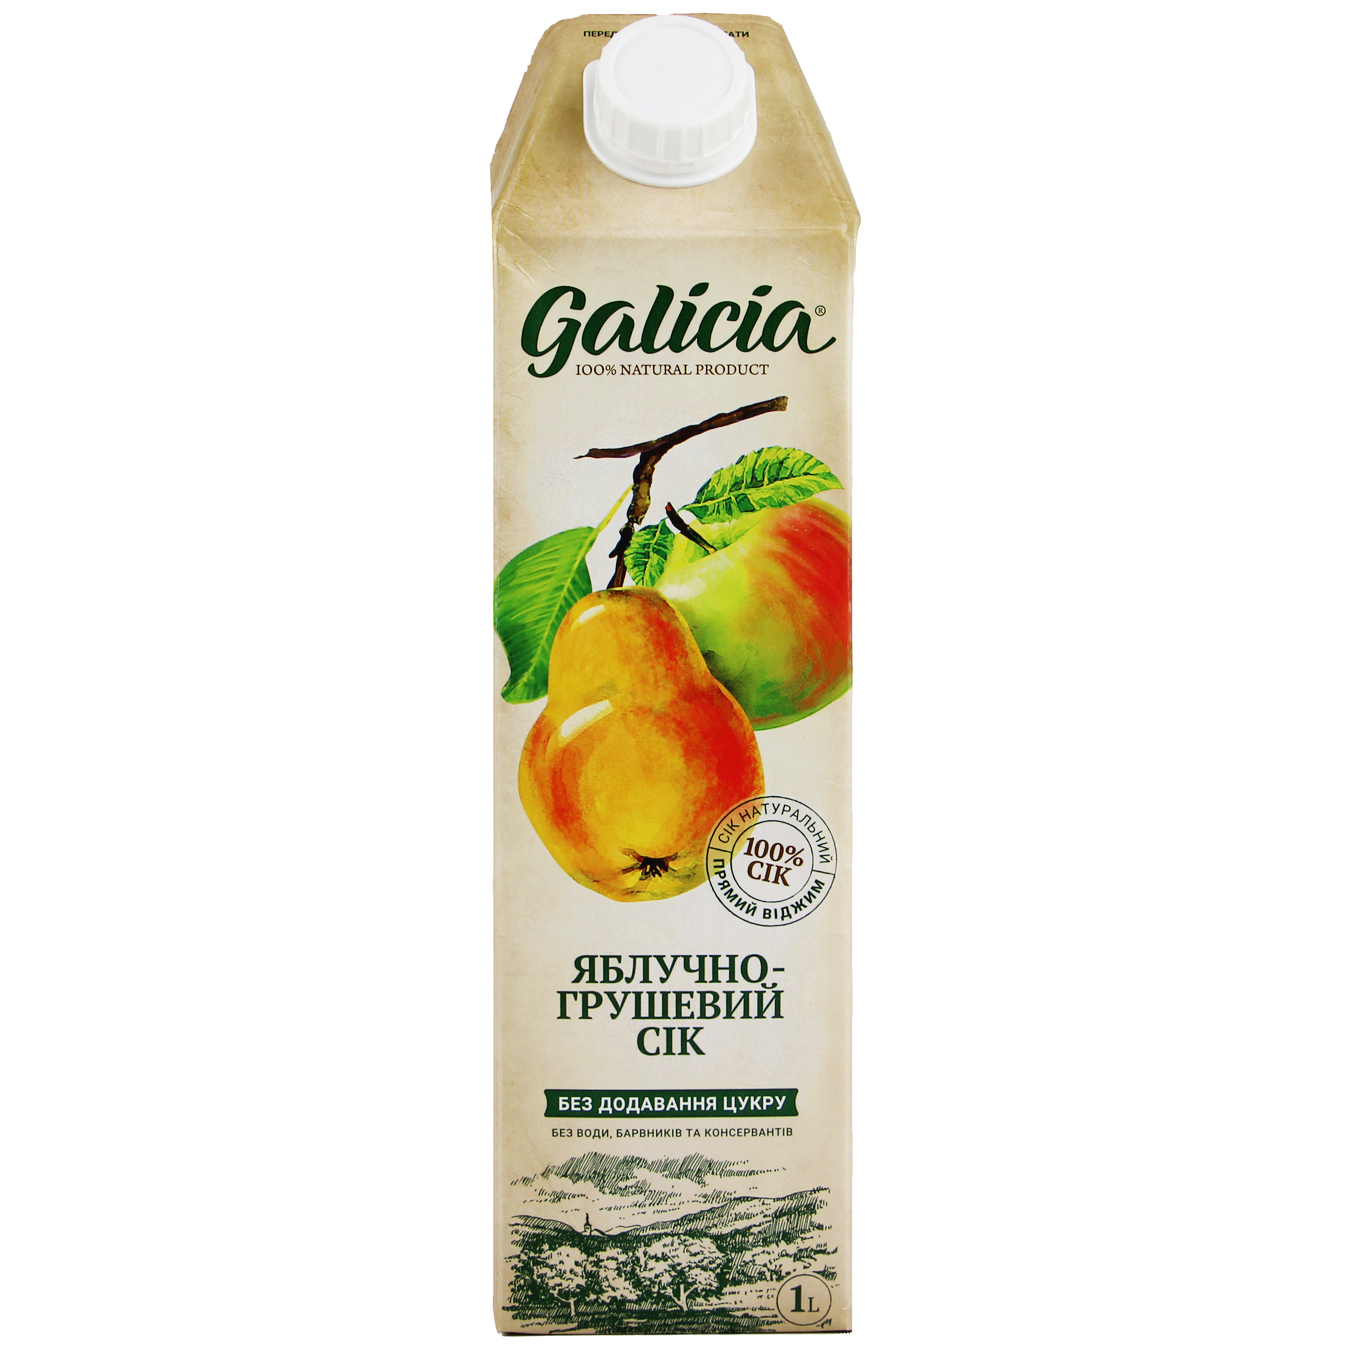 Galicia Apple-Pear Juice 1l